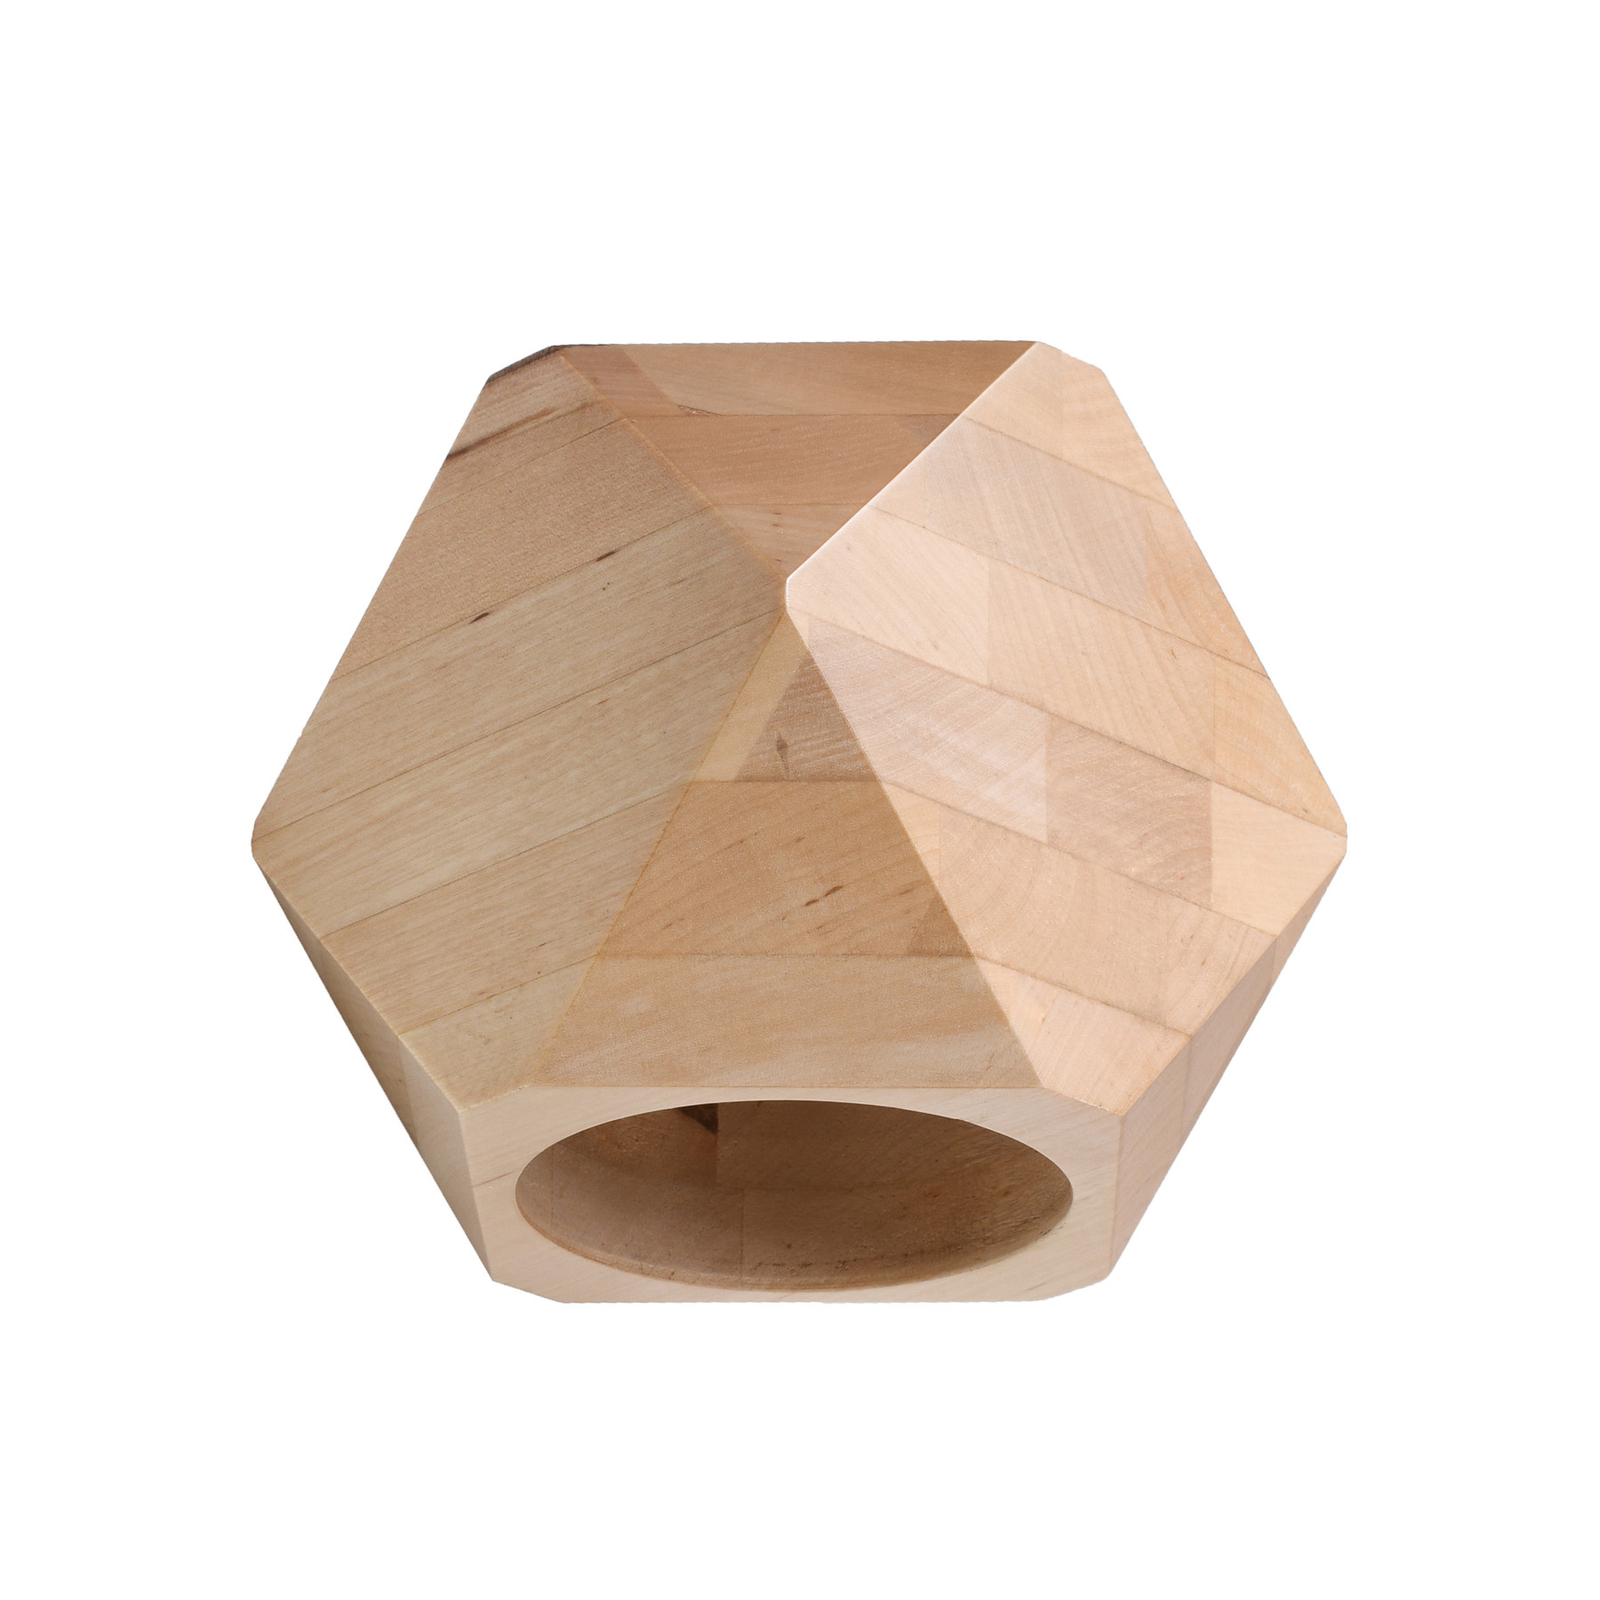 Envostar Peach Puff wall polyhedron wood 1-bulb